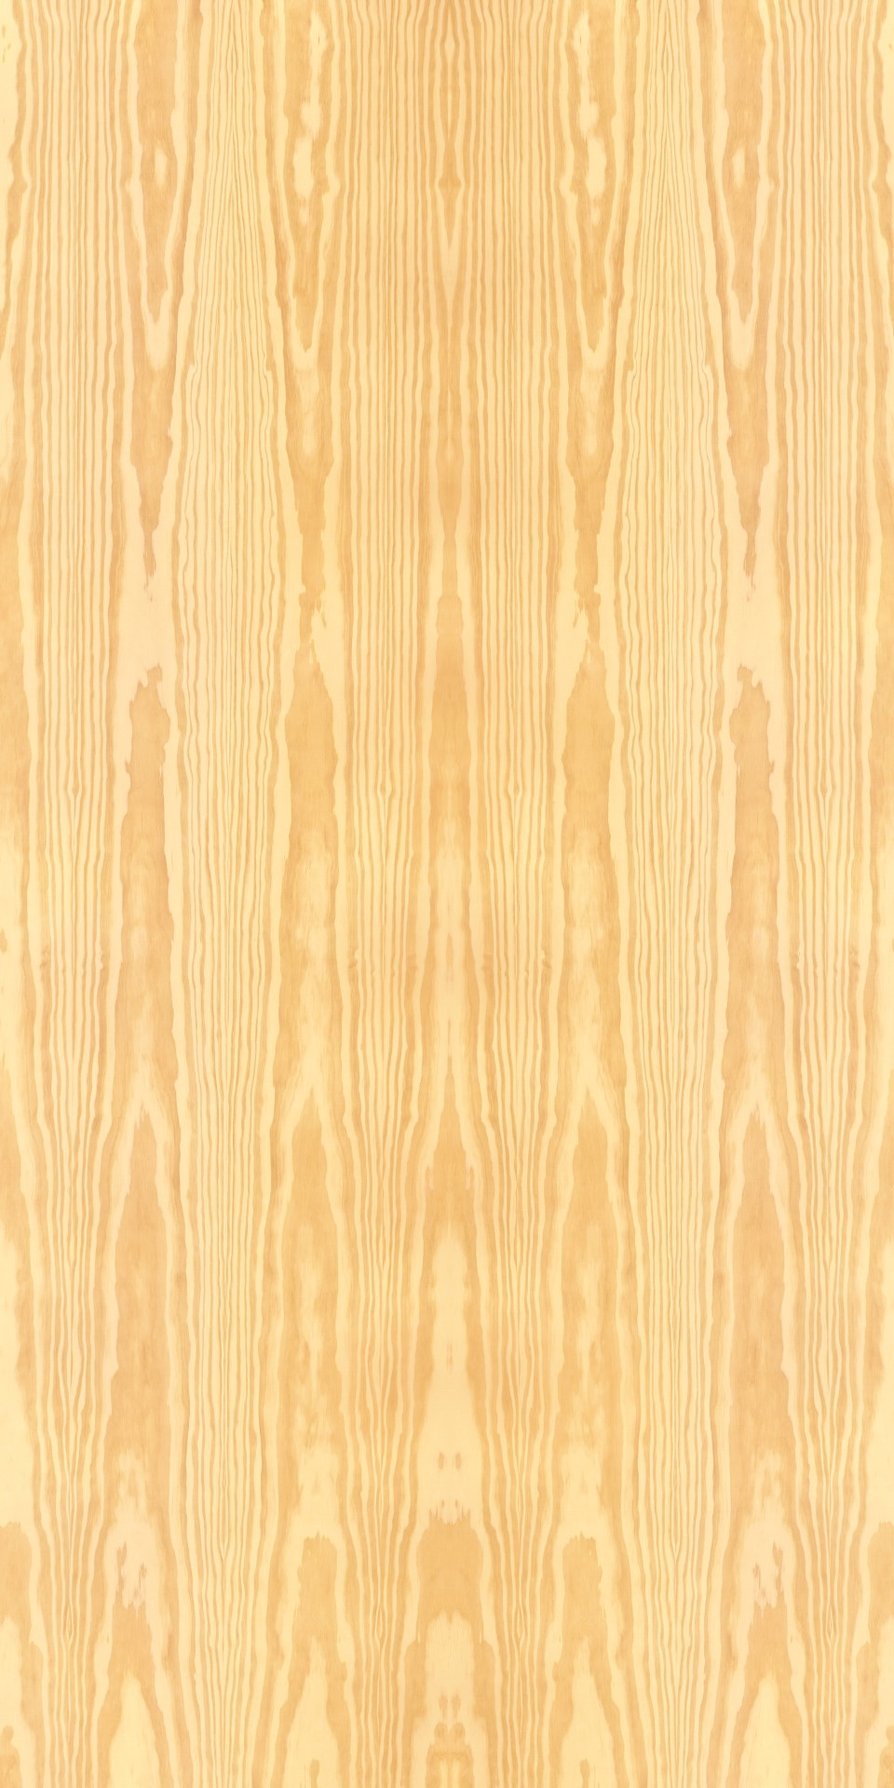 Pine veneer